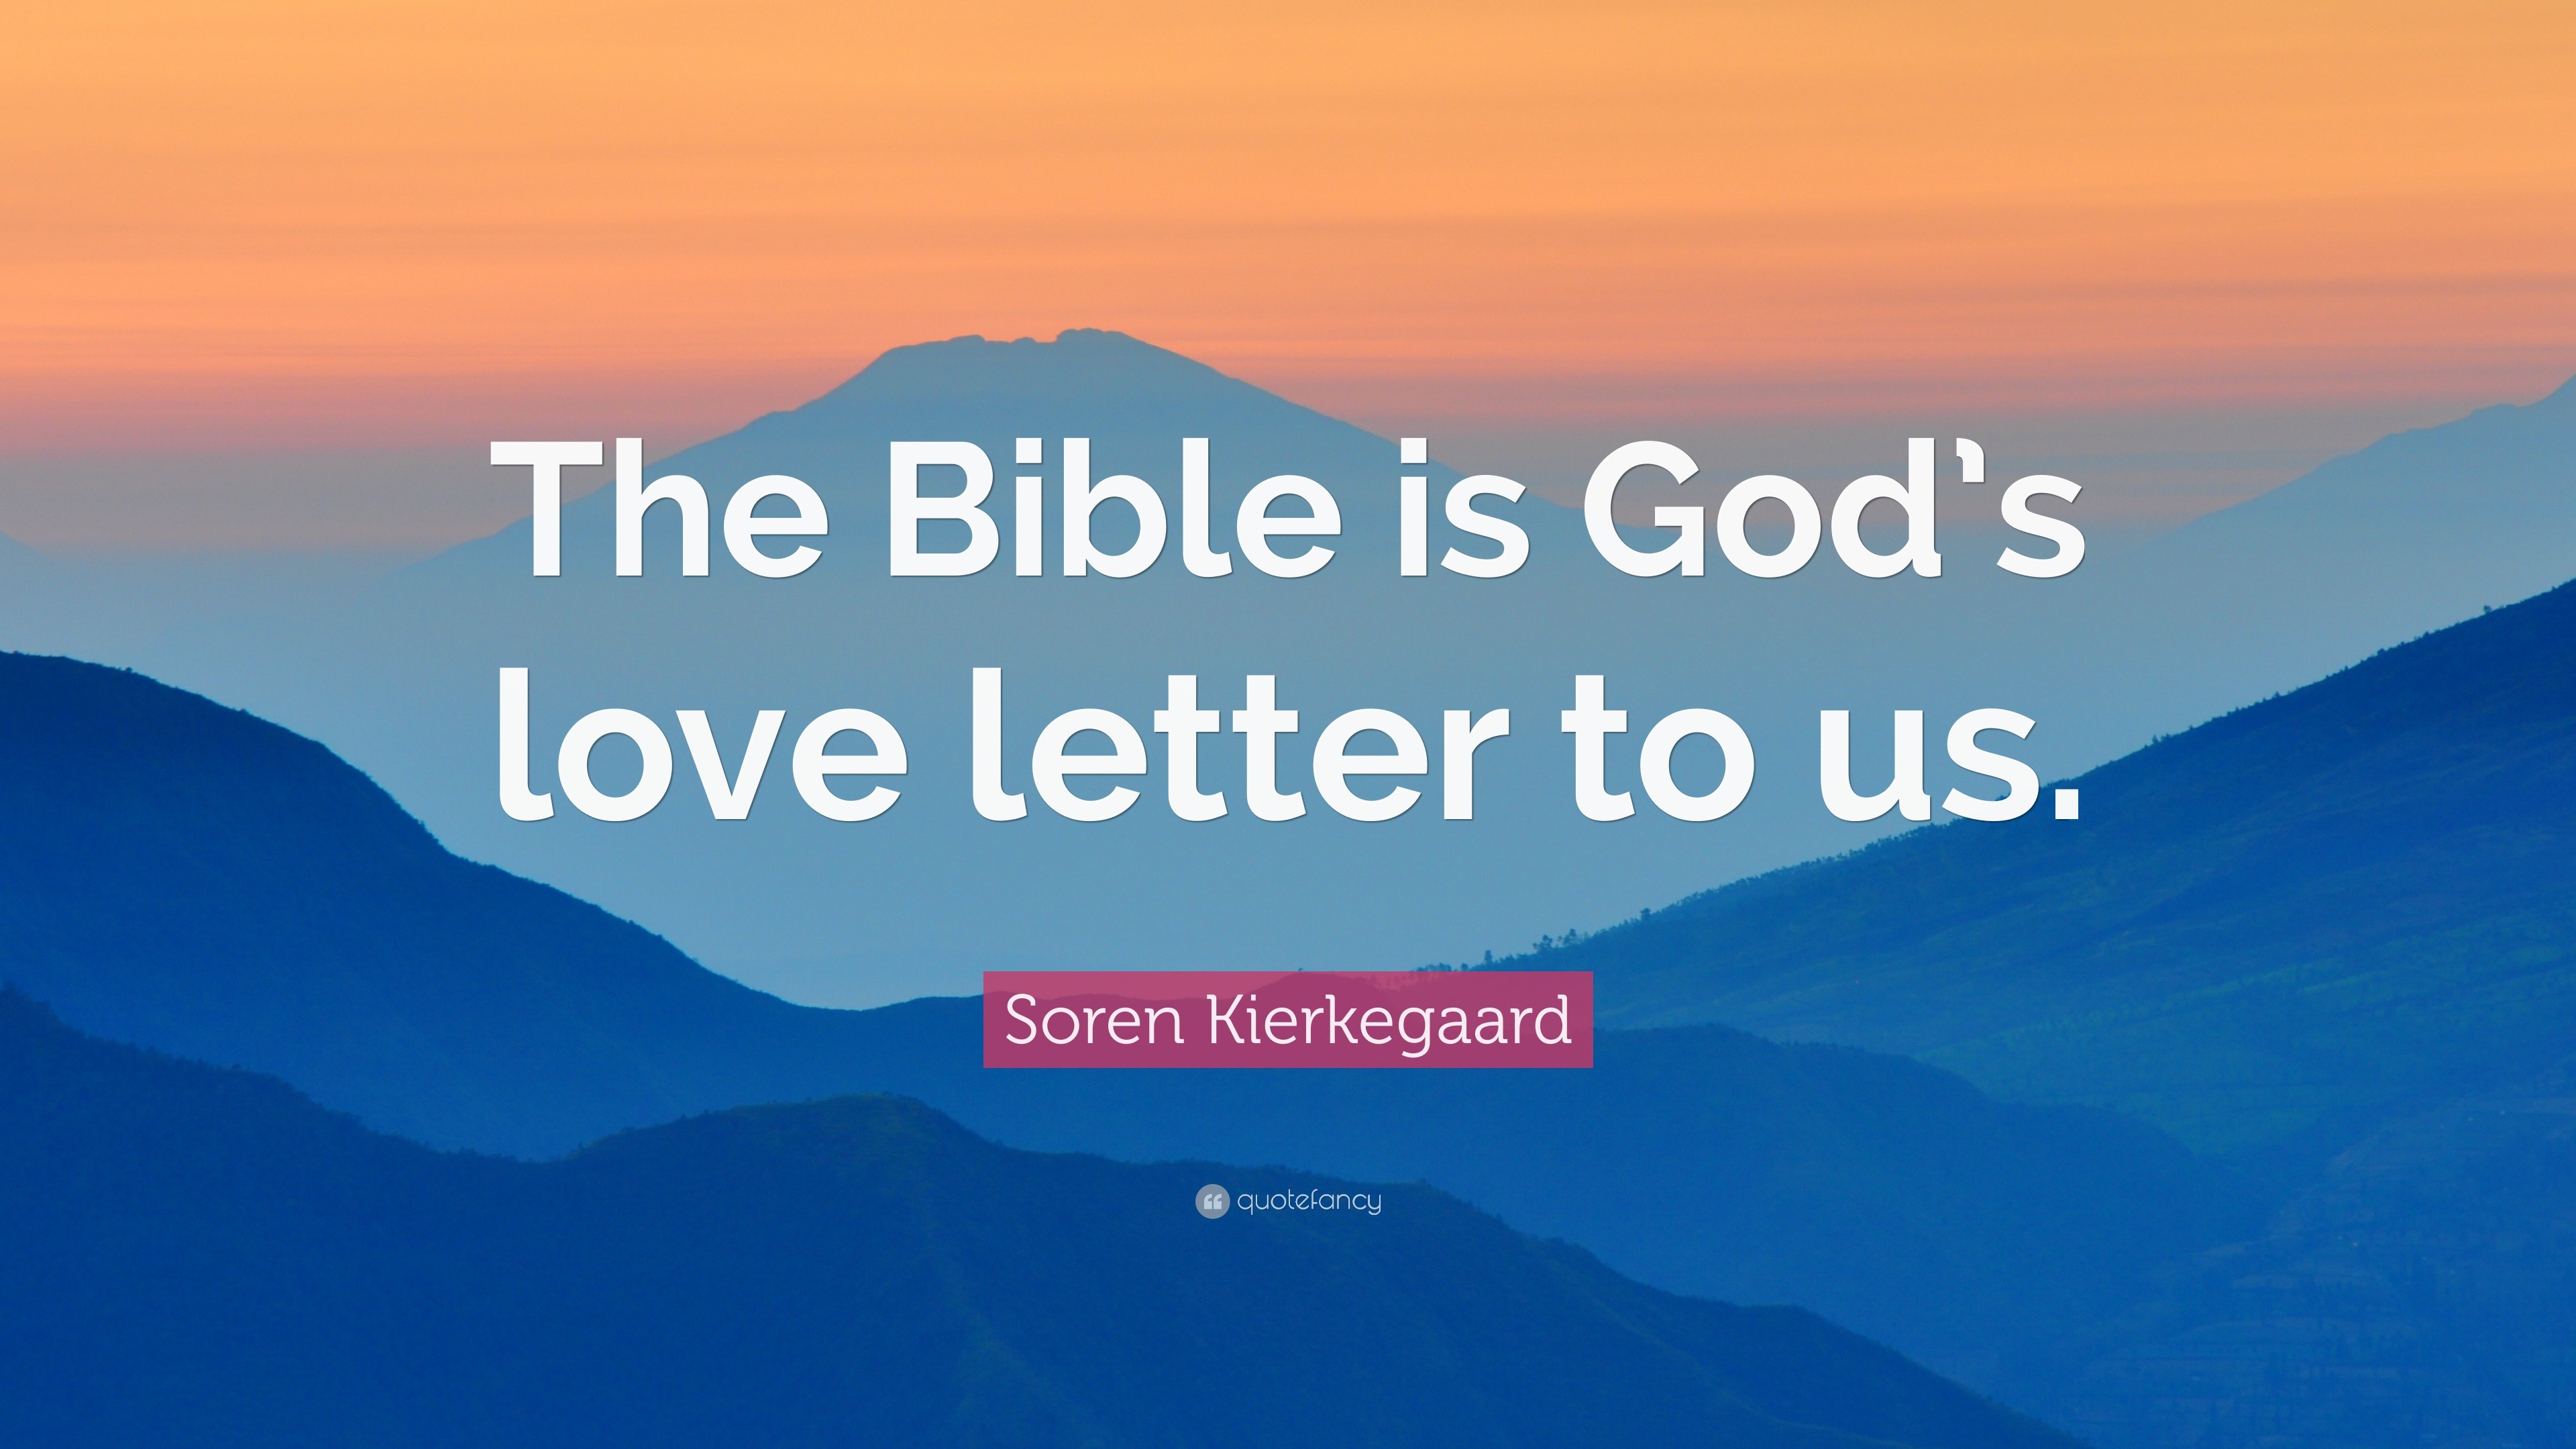 Soren Kierkegaard Quote “The Bible is God s love letter to us ”